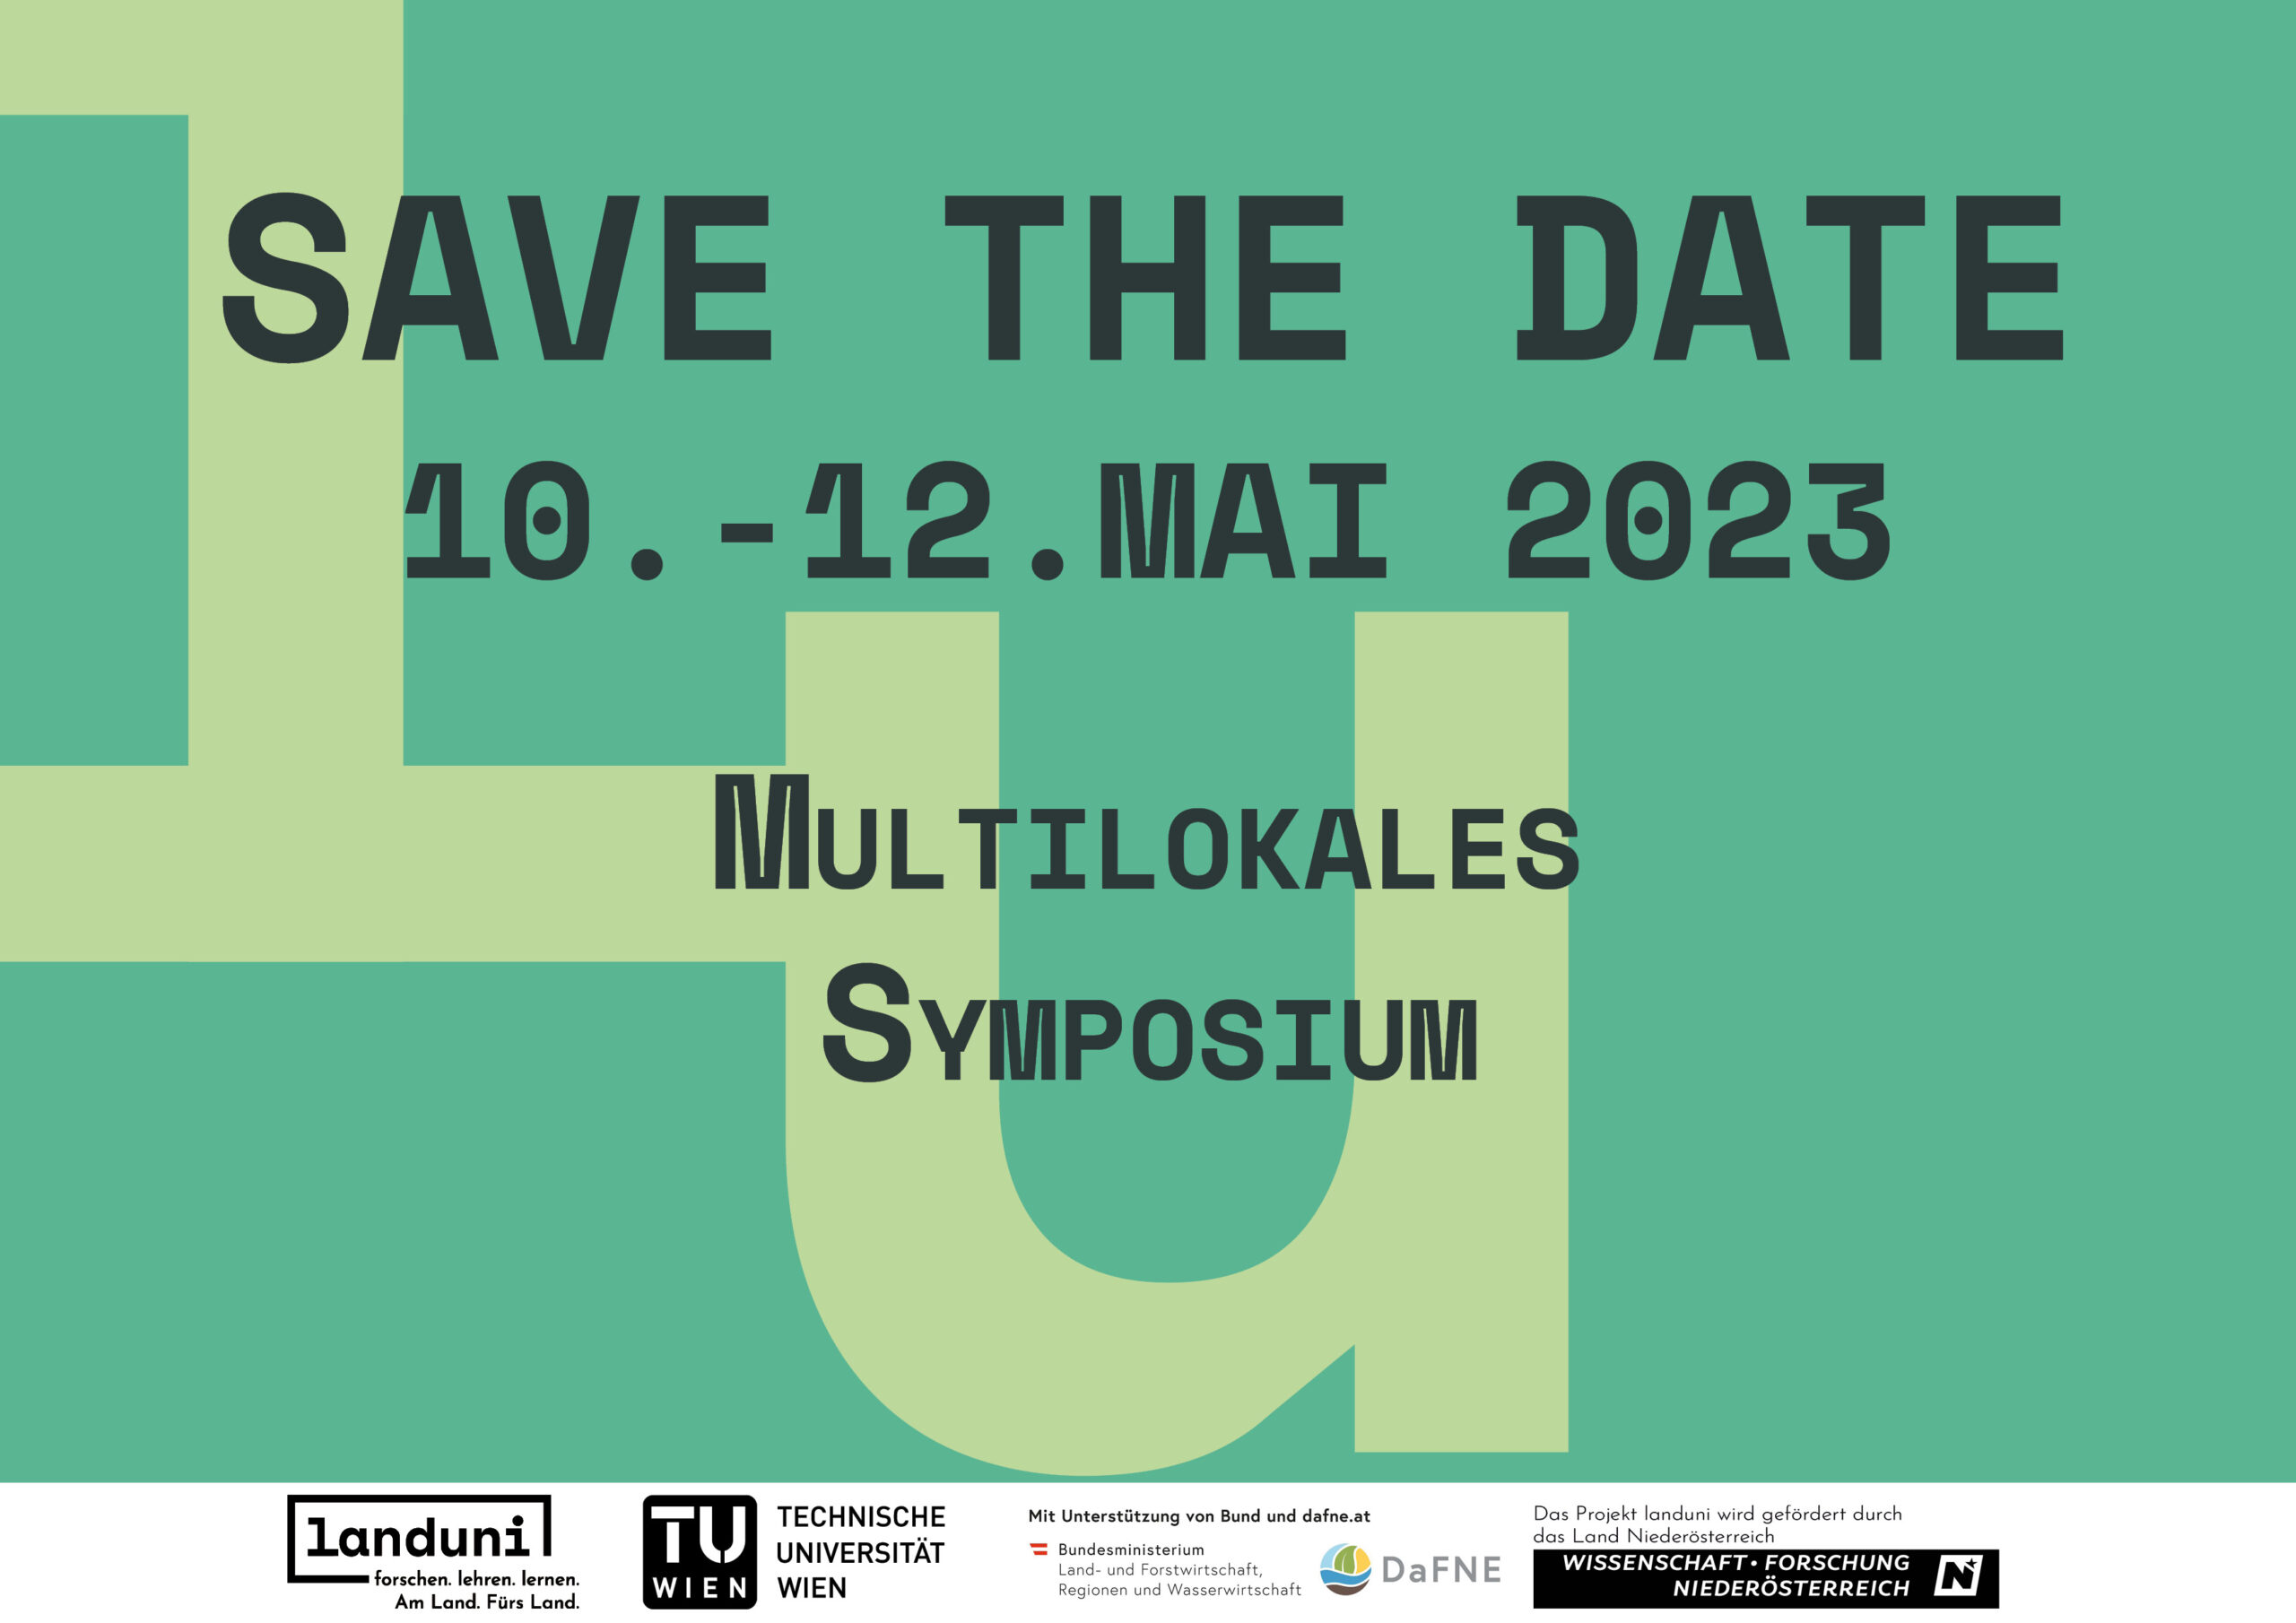 Die Einladung für das Multilokale Symposium. Es findet von zehnten bis zwölften Mai 2023 an der landuni Drosendorf statt.